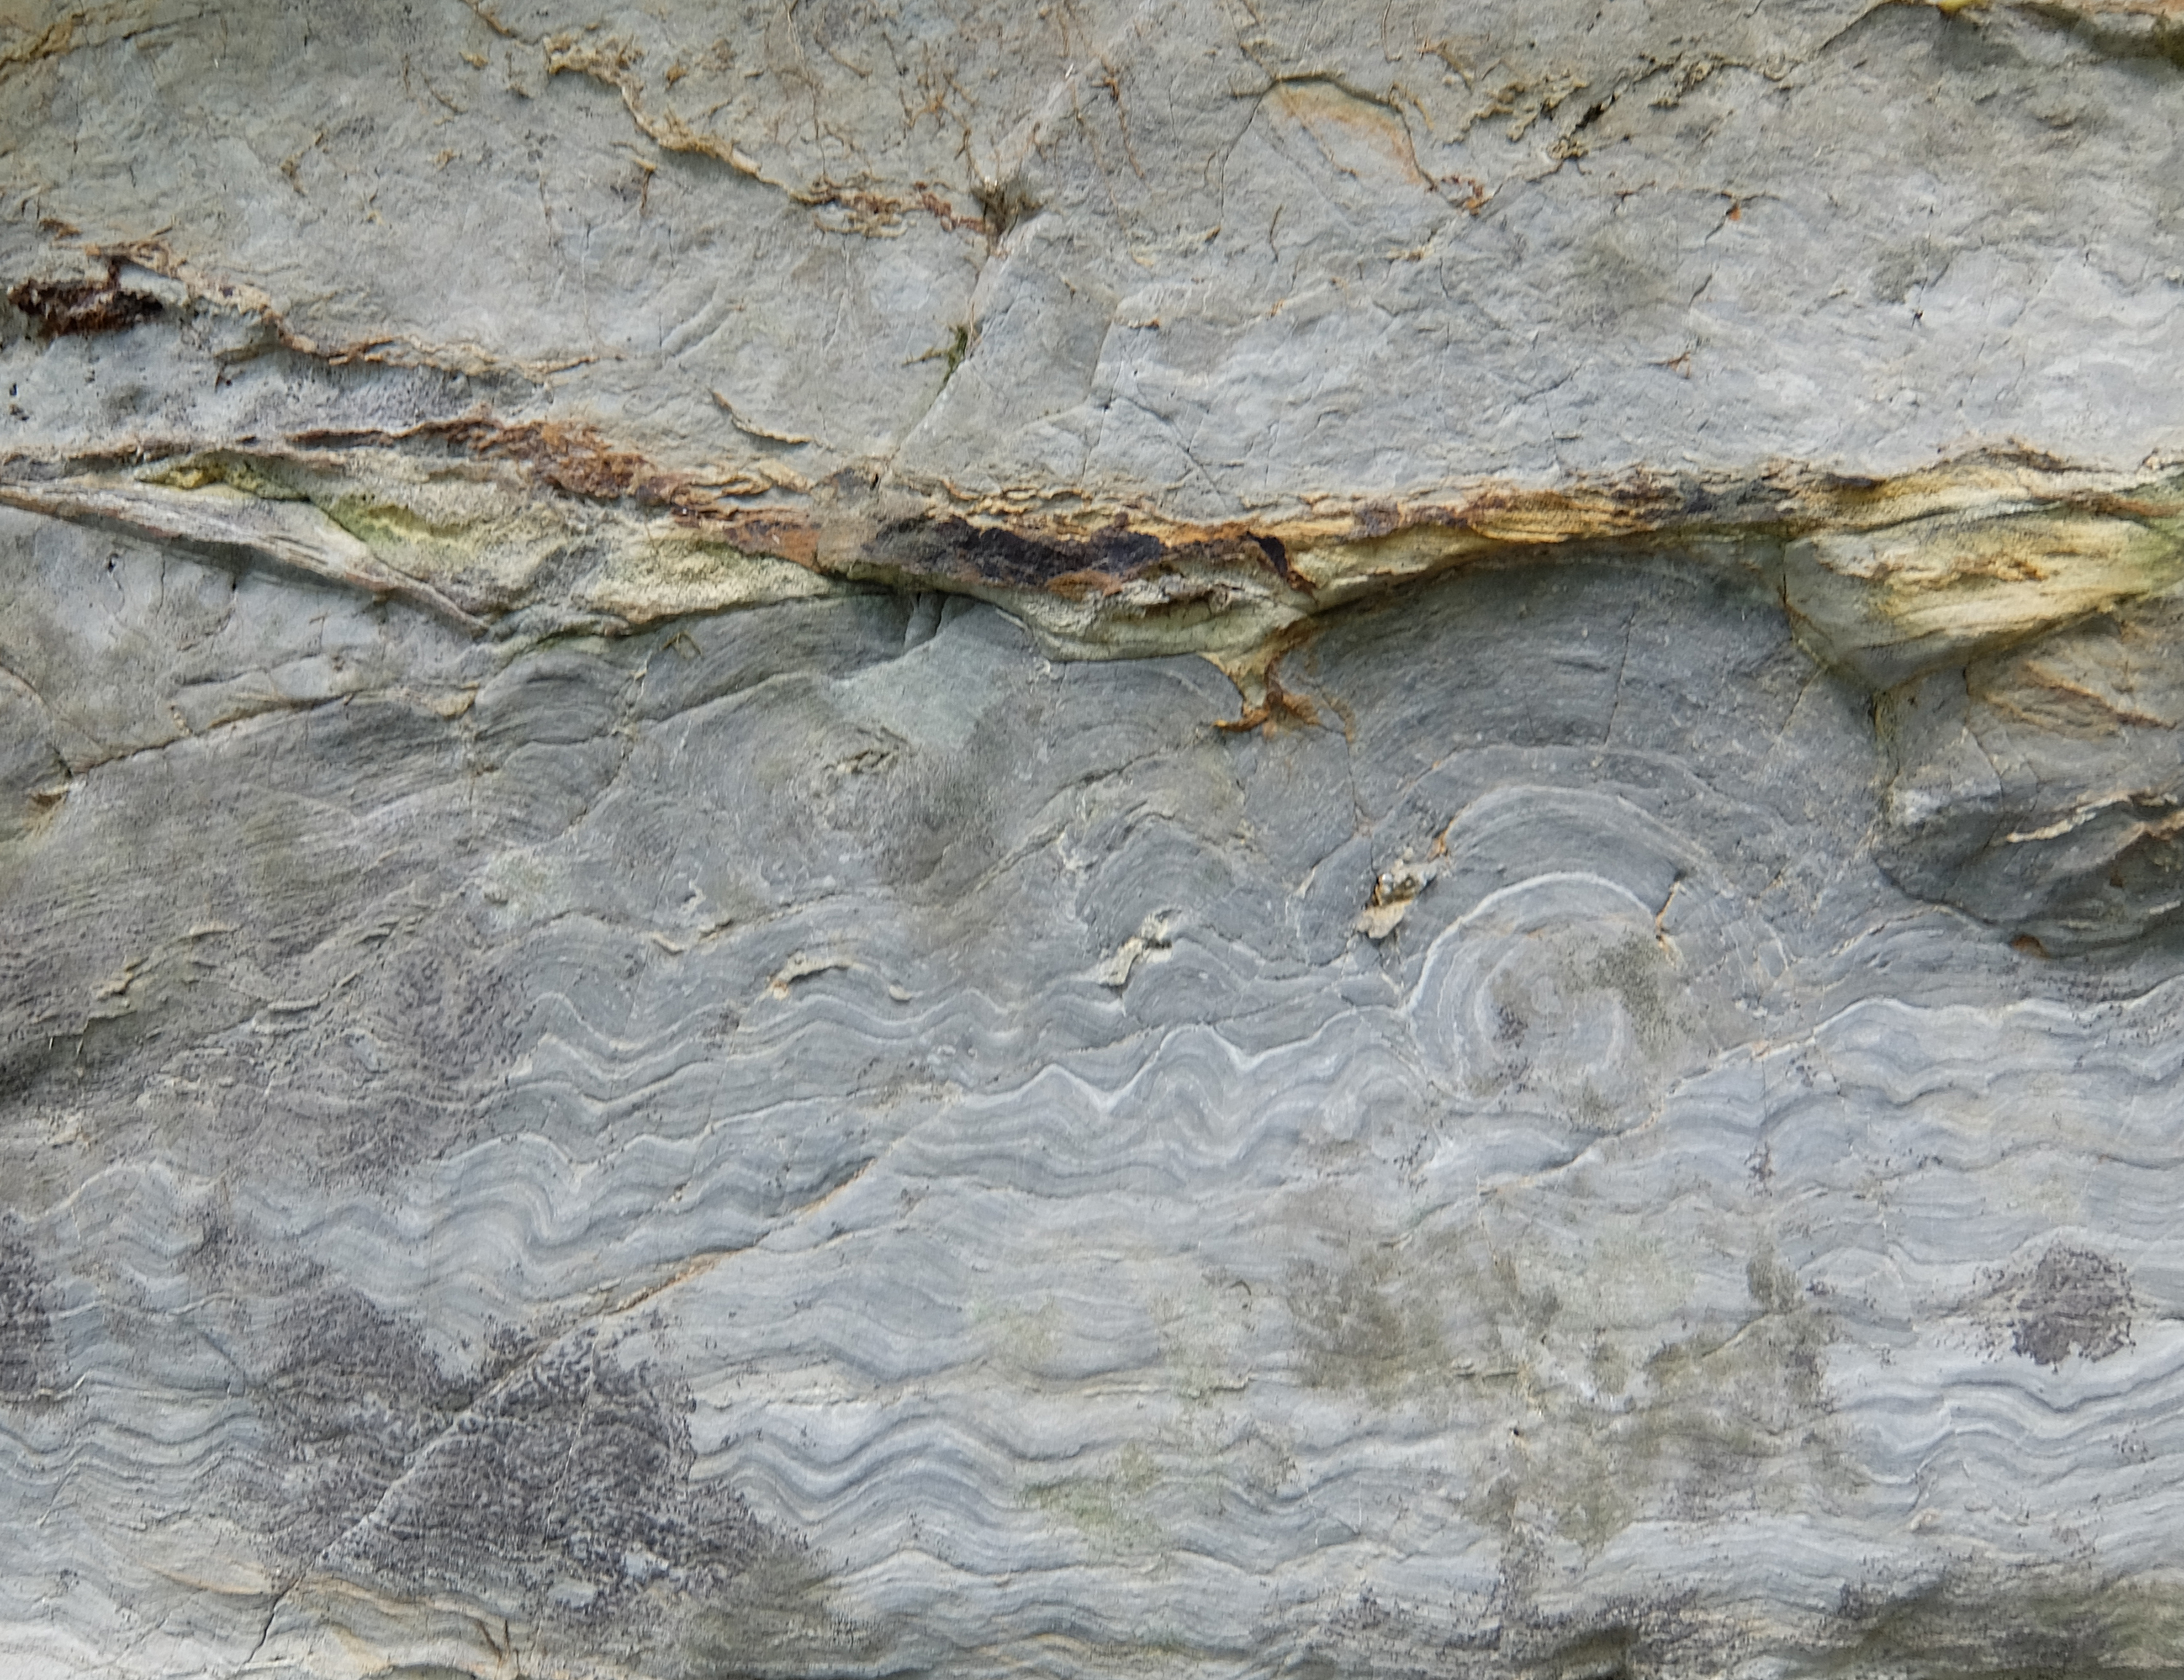 round head stromatolite